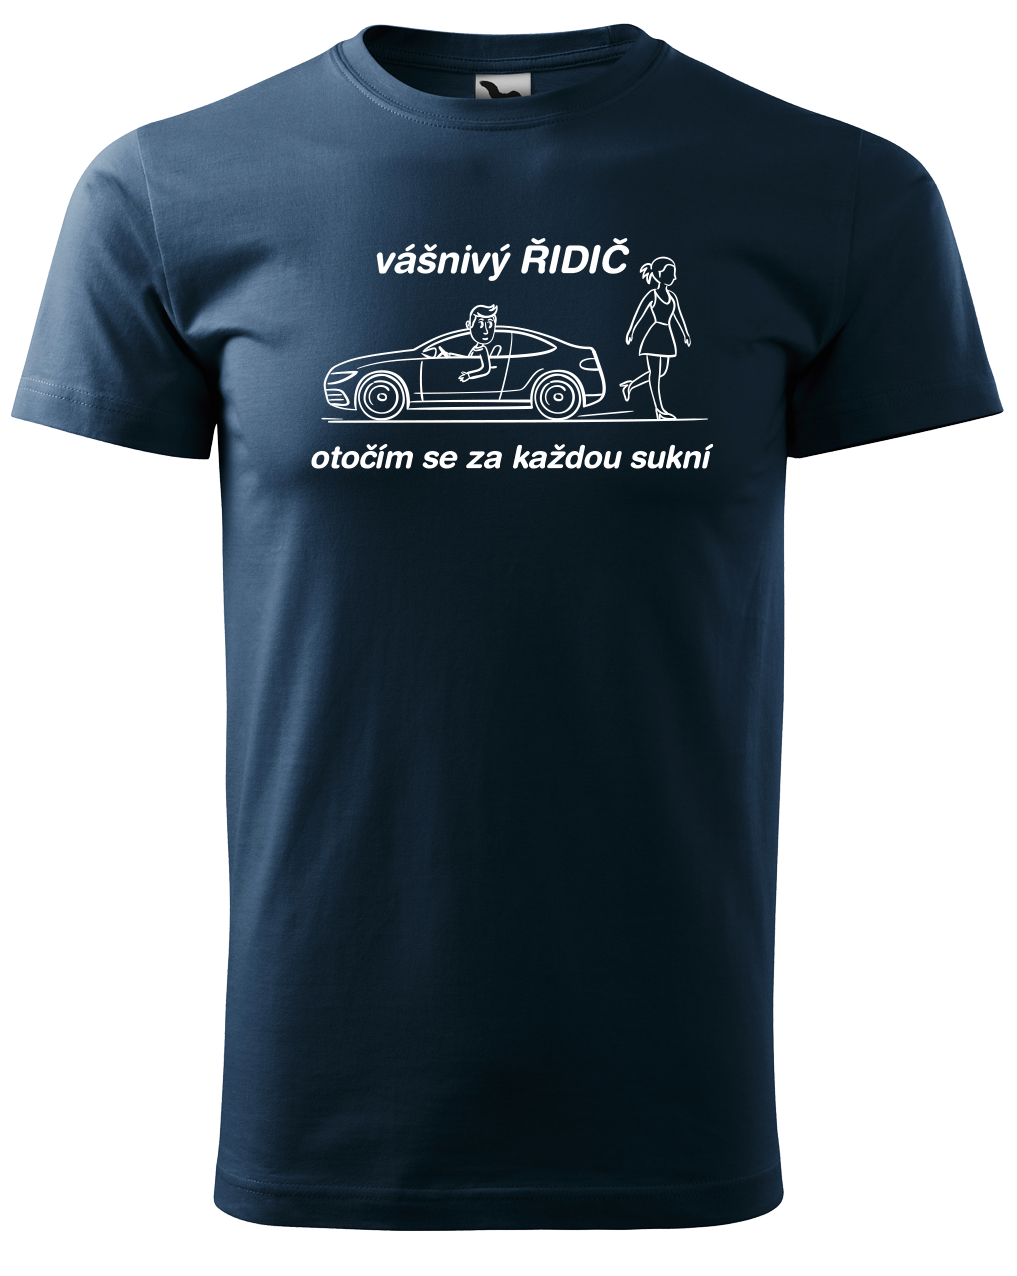 Vtipné tričko pro řidiče - Vášnivý řidič Velikost: XL, Barva: Námořní modrá (02)